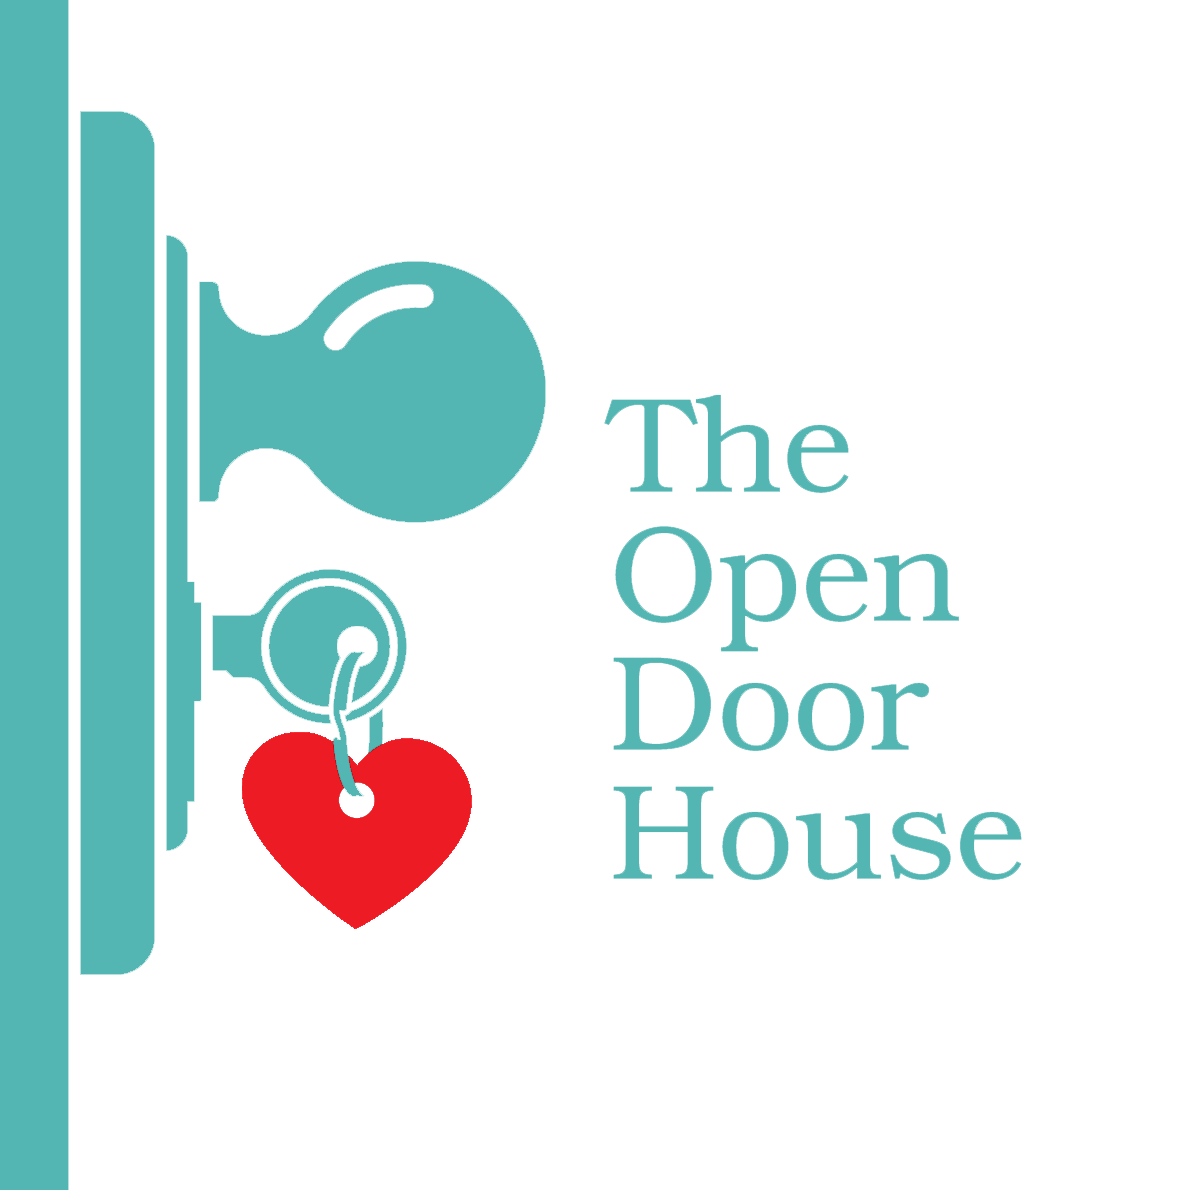 The Open Door House